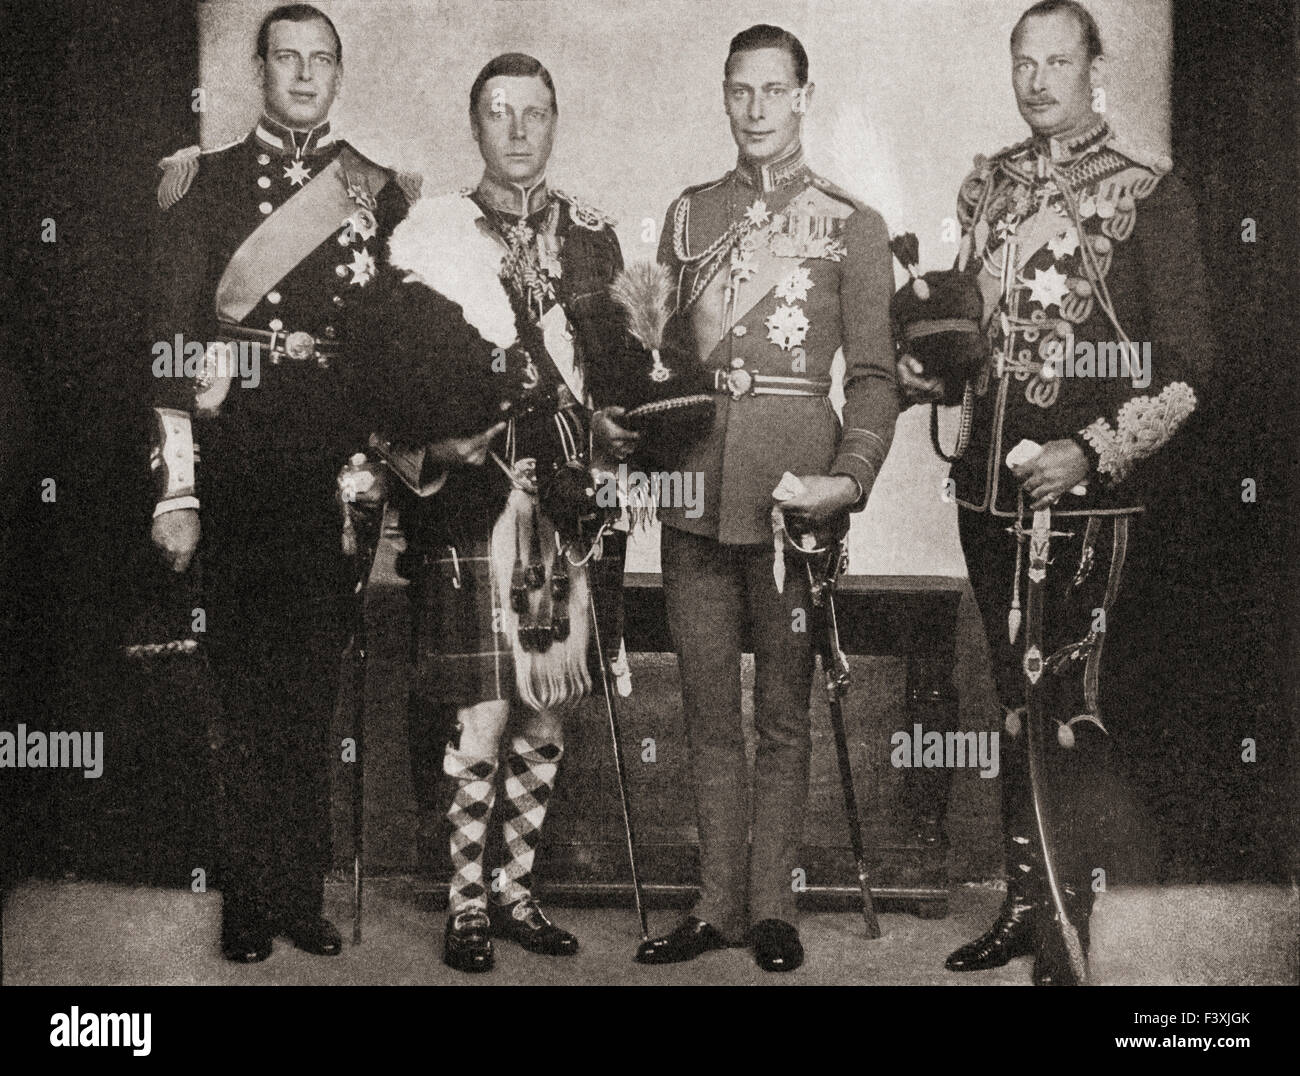 Quattro dei cinque figli del re George V. Da sinistra a destra, Prince George, Duca di Kent, 1902-1942, navale e Air Force Officer. Edward, 1894 - 1972. King Edward VIII, poi duca di Windsor. Prince Albert, il Duca di York, più tardi il re George VI, 1895 - 1952. Il principe Henry, duca di Gloucester, 1900 - 1974, soldato. Foto Stock